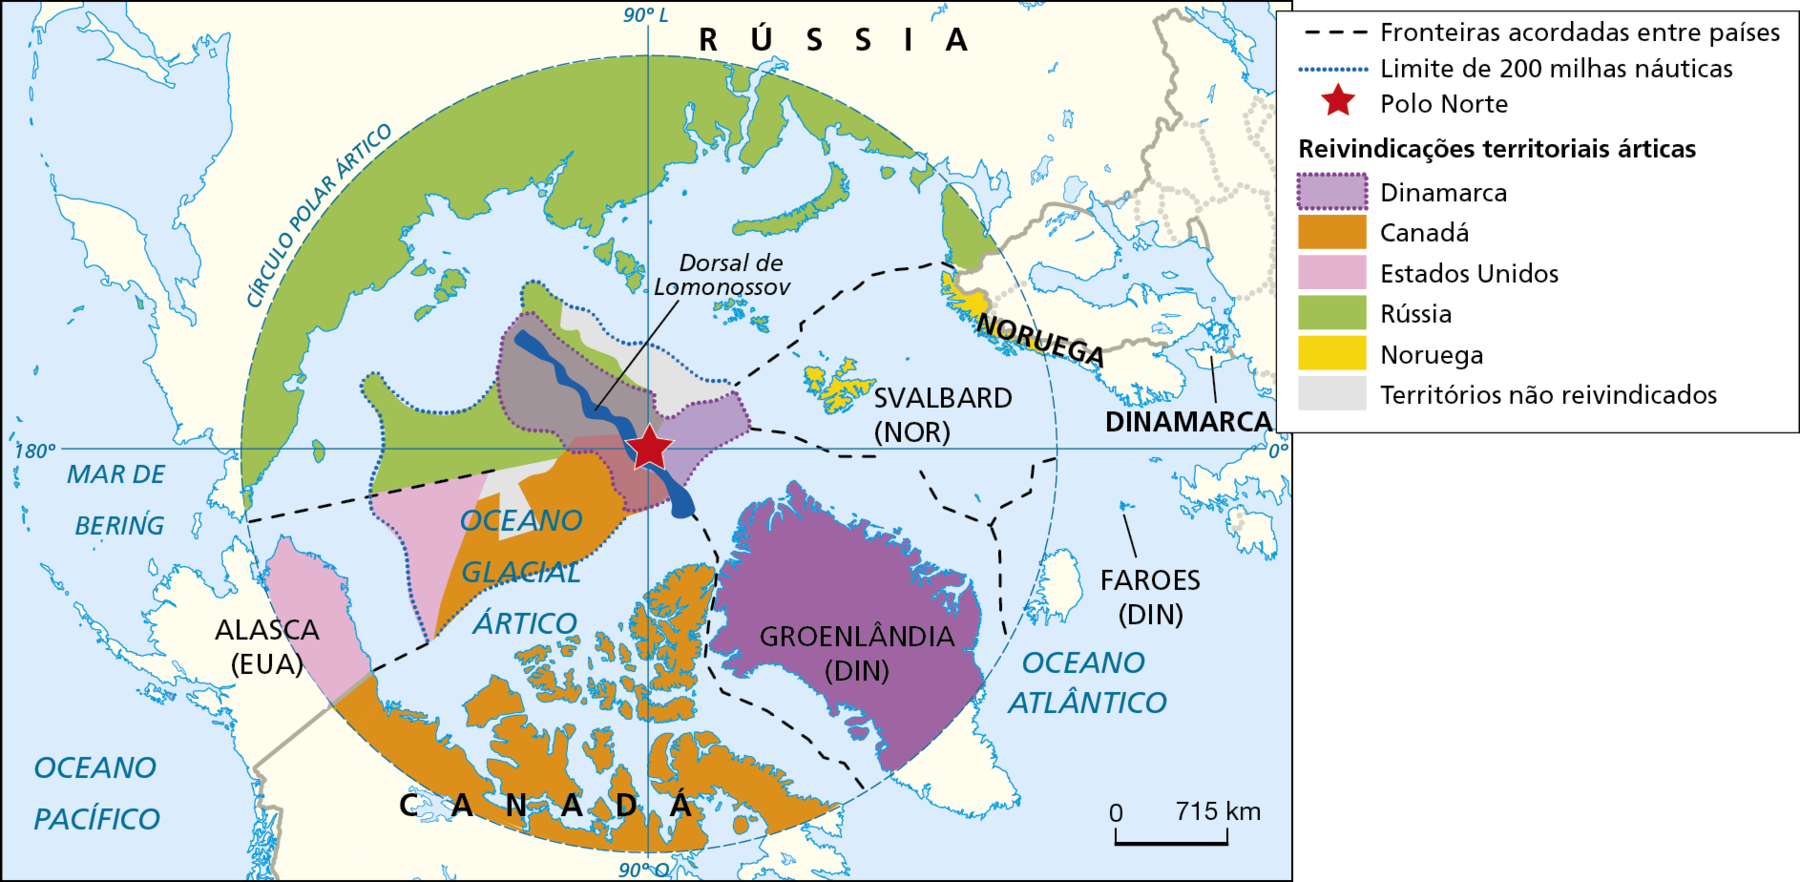 Mapa. Países envolvidos na disputa territorial no Ártico.
Mapa delimitando as fronteiras acordadas entre alguns países no Ártico. No centro do mapa, uma estrela vermelha indica o 
Polo Norte, e ao seu redor, a porção norte dos continentes eurasiano e americano, a Groenlândia, além dos Oceanos Atlântico e Pacífico e Mar de Bering.
As fronteiras acordadas entre países foram representadas em linha tracejada na cor preta.
Os limites de 200 milhas náuticas foram representados por linhas pontilhadas azuis. Áreas além desses limites, no Oceano Glacial Ártico, são reivindicadas por Dinamarca, Canadá, Estados Unidos, Rússia e Noruega. 
Na parte inferior, escala de 0 a 715 quilômetros.